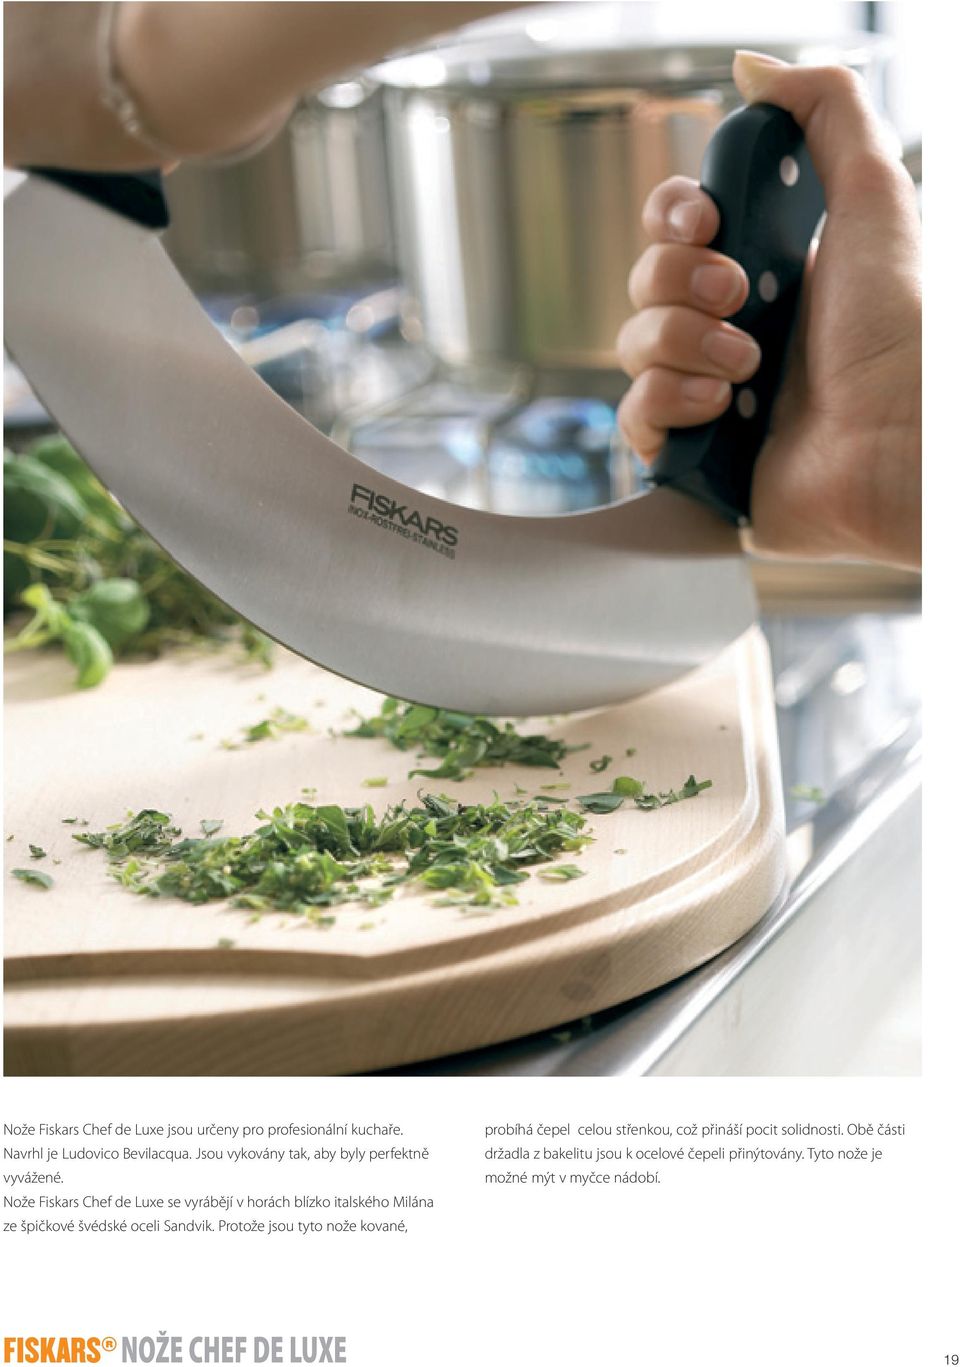 Nože Fiskars Chef de Luxe se vyrábějí v horách blízko italského Milána ze špičkové švédské oceli Sandvik.